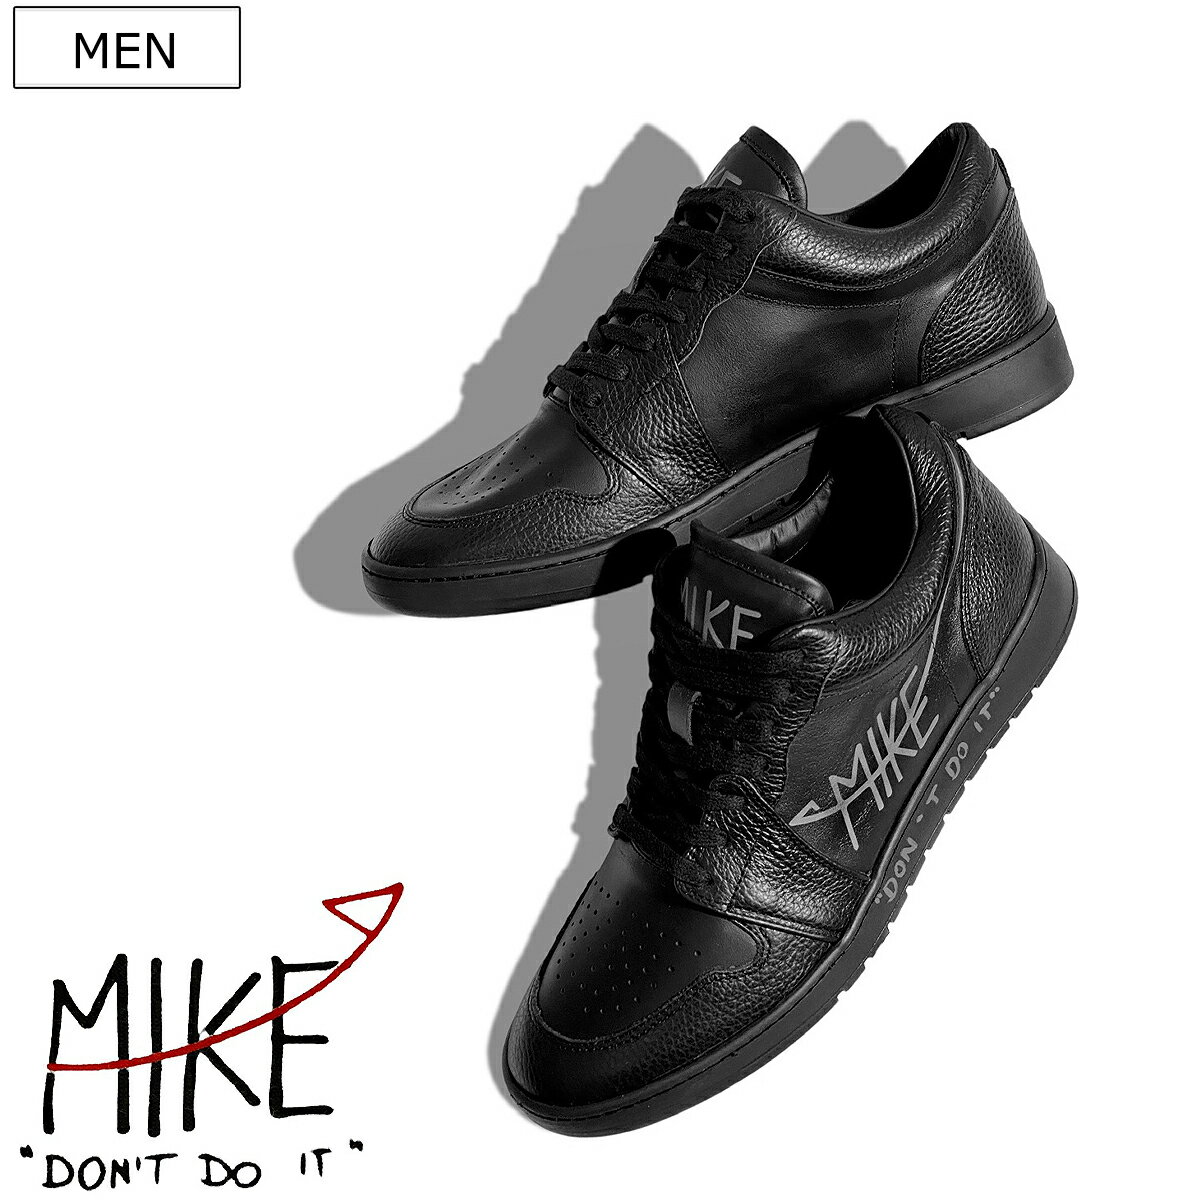 【定価49,500円(税込)】MIKE DON'T DO IT-マイク ドント ドゥイット- クオリティの高さと同時にウィットの効いたデザインで周囲を魅了する スムース＆グレイニーレザーコンビスニーカー 靴 シューズ DDSH01 ブラック GOMMUS社 リサイクルラバー メンズ 伊製